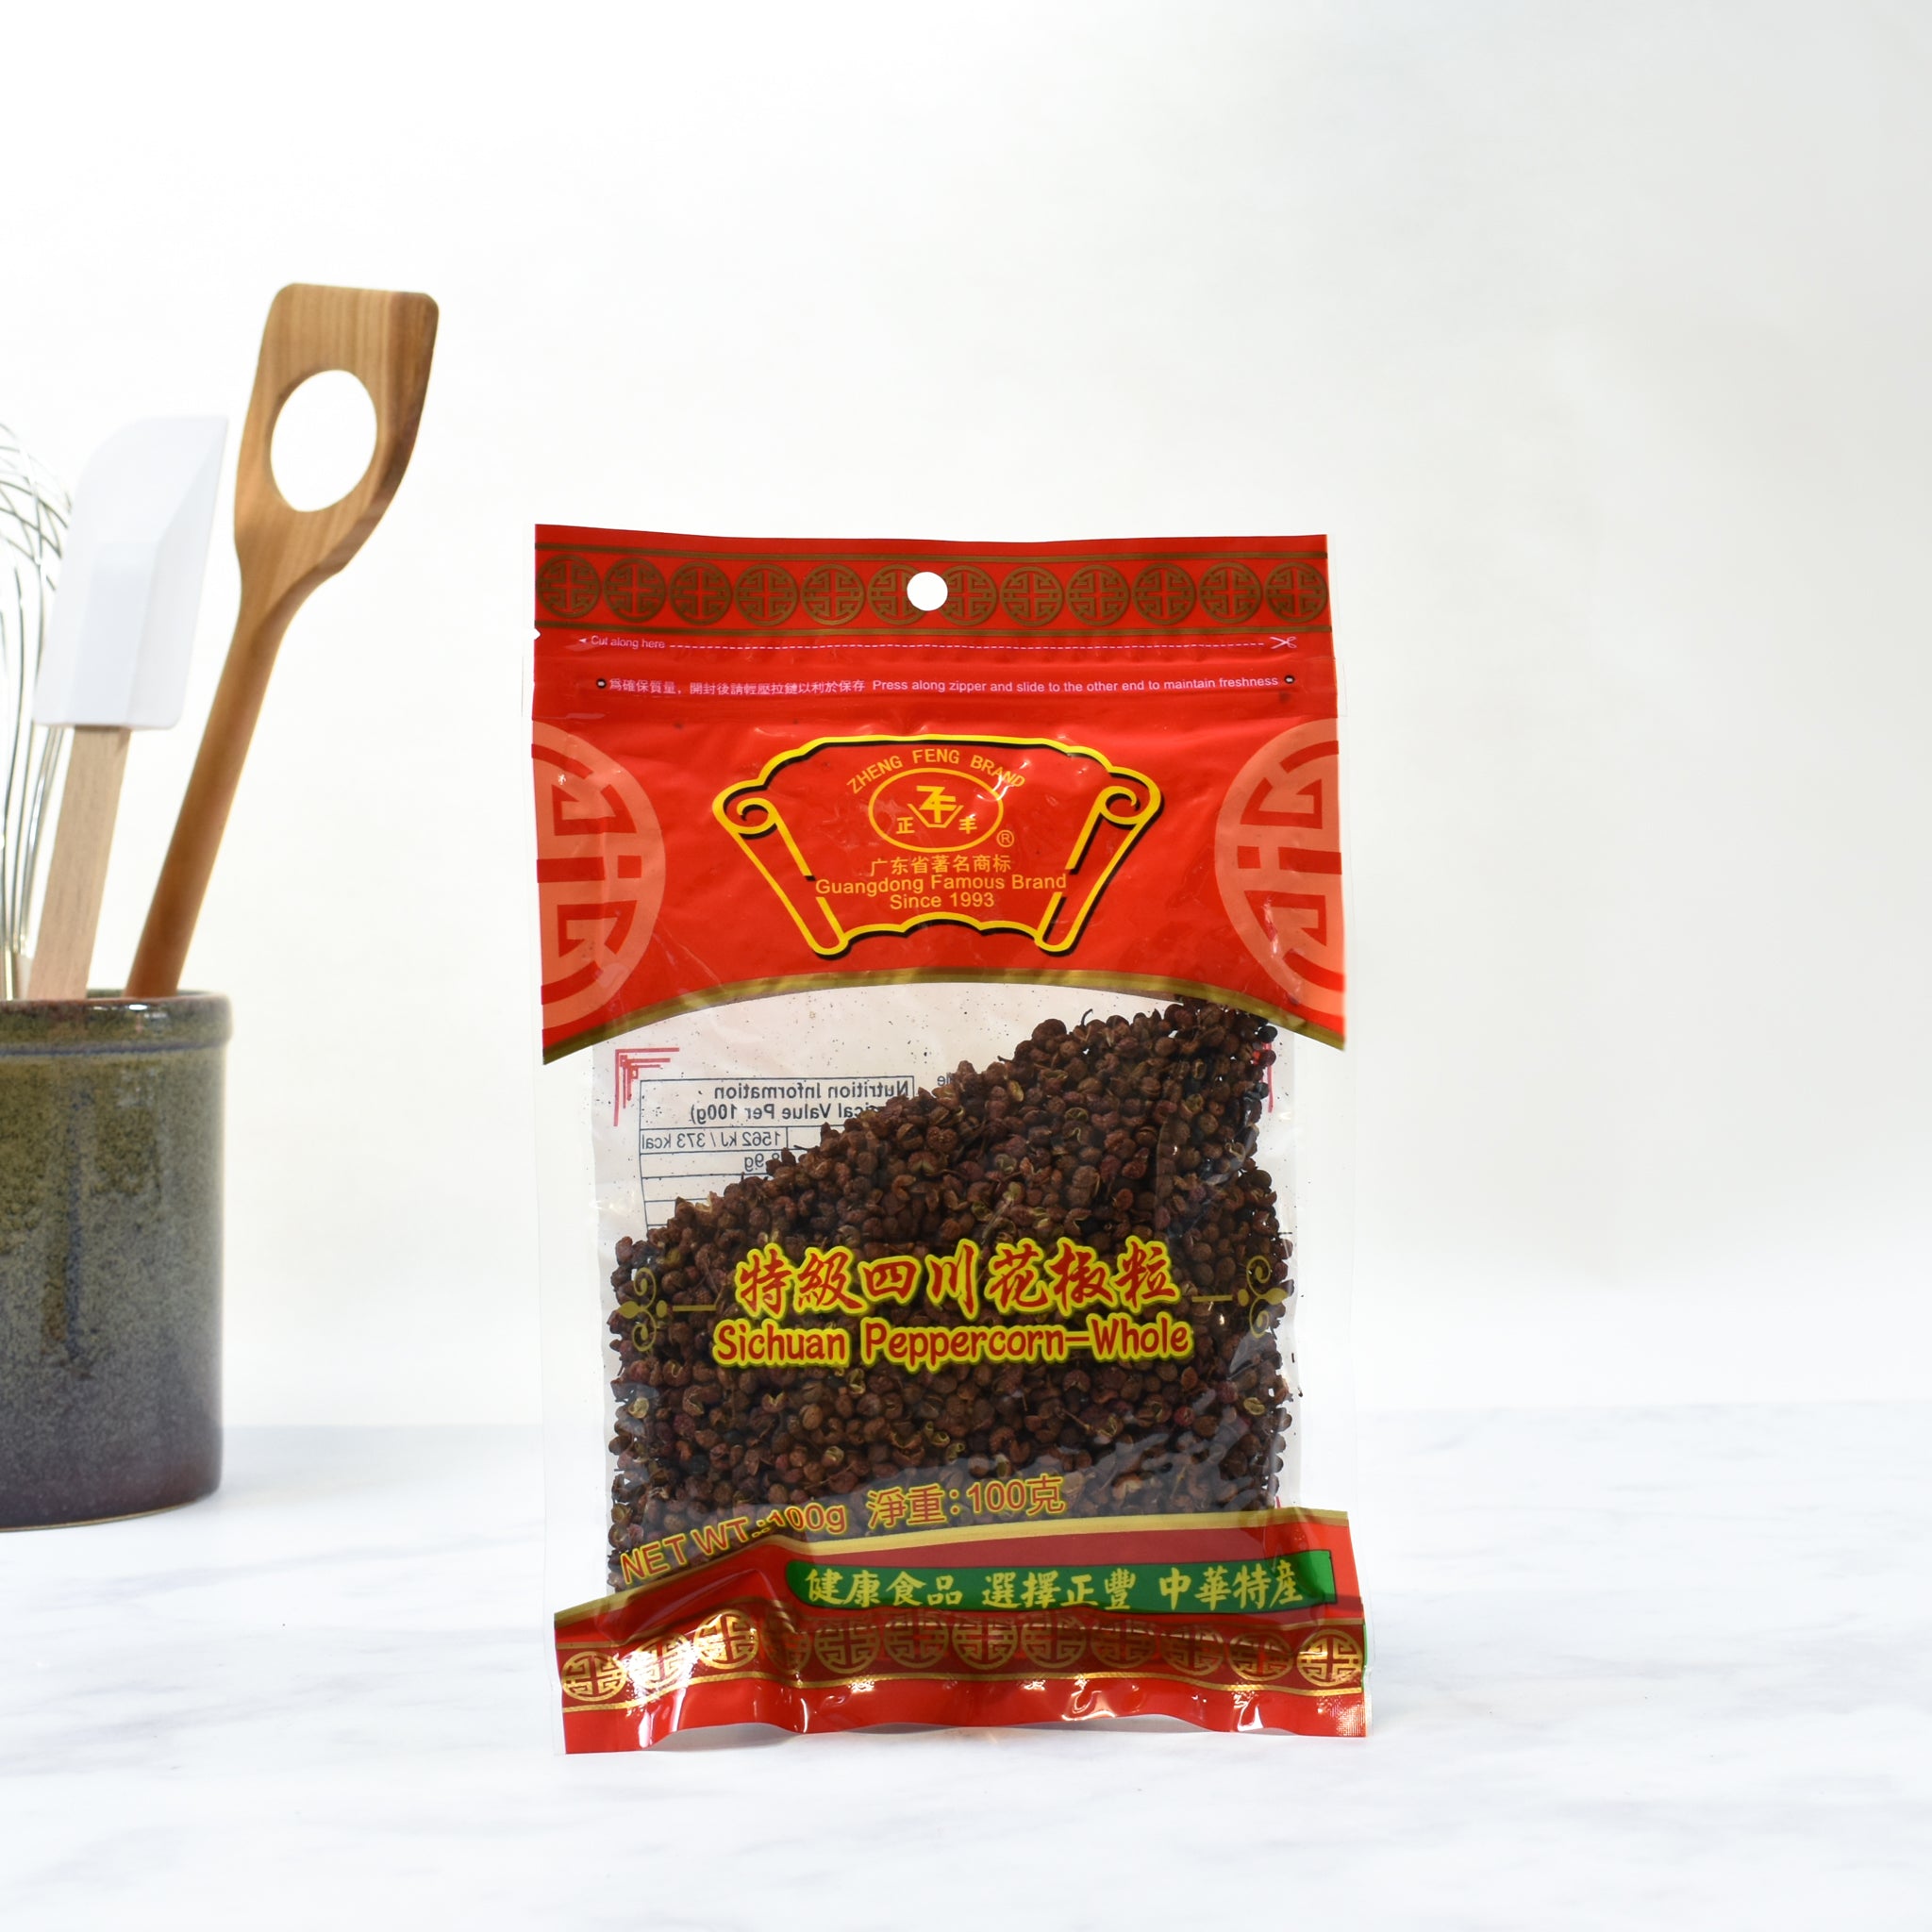 Brotherhood Sichuan Pepper 100g Ingredients Seasonings Chinese Food Lifestyle packaging shot